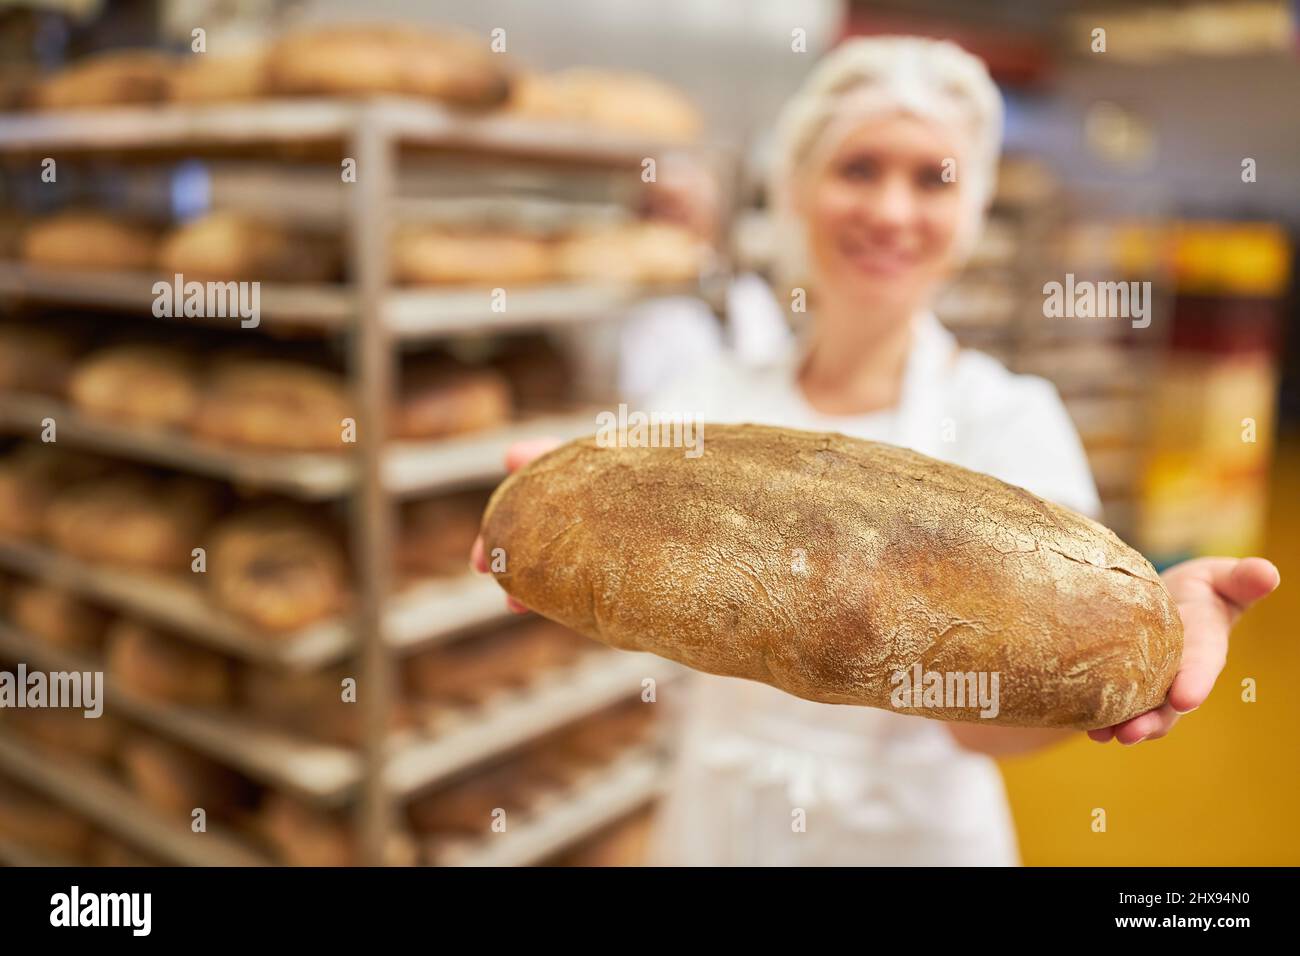 L'apprendista panettiere è orgogliosa di presentare una pagnotta di pane appena sfornata con scaffale in sottofondo Foto Stock